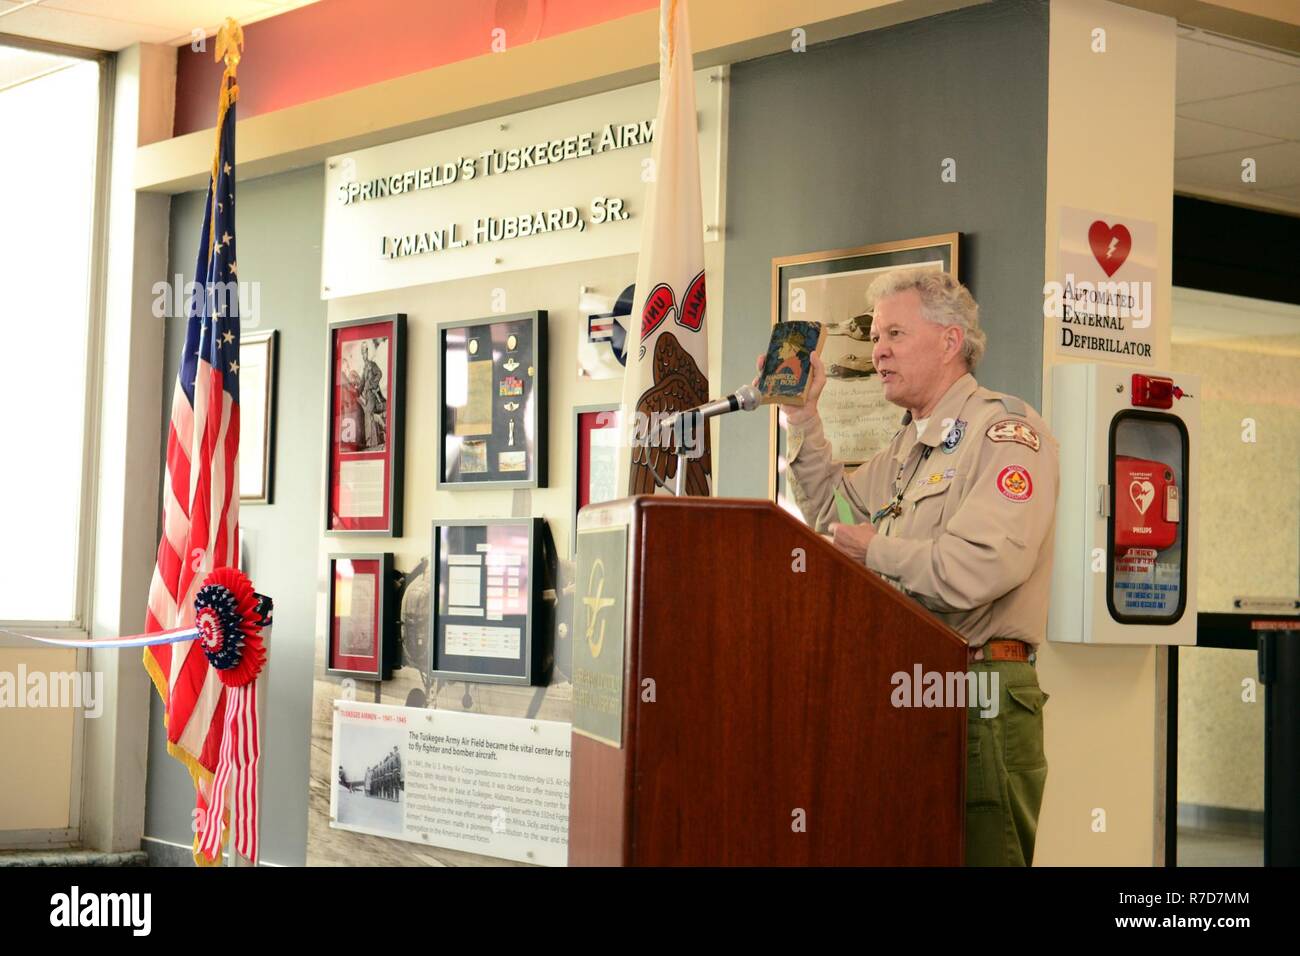 Herr Dan O'Brien, Executive Director, Abraham Lincoln Rates, Boy Scouts of America, beschreibt einige Unterschiede in was es nahm, um ein Eagle Scout in den 1940er Jahren im Vergleich zu heutigen Eagle Scoout Standards. Zu seinen weiteren großen Errungenschaften war Lyman L. Hubbard Sr. auch ein Eagle Scout. Stockfoto